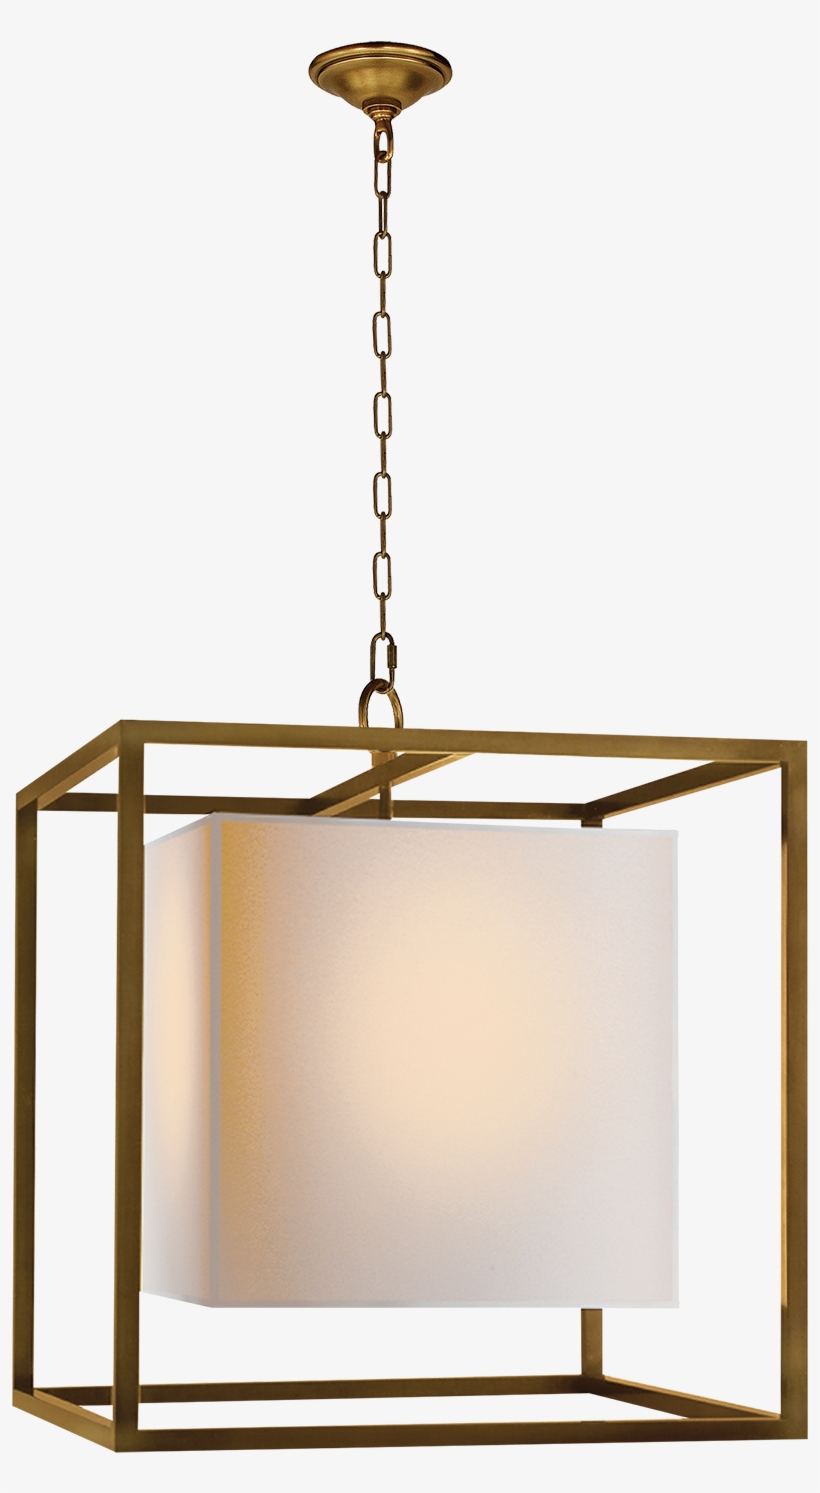 Hanging Lantern Lights - Visual Comfort Sc5160bz Studio Caged 2 Light 22 Inch, transparent png #2911247